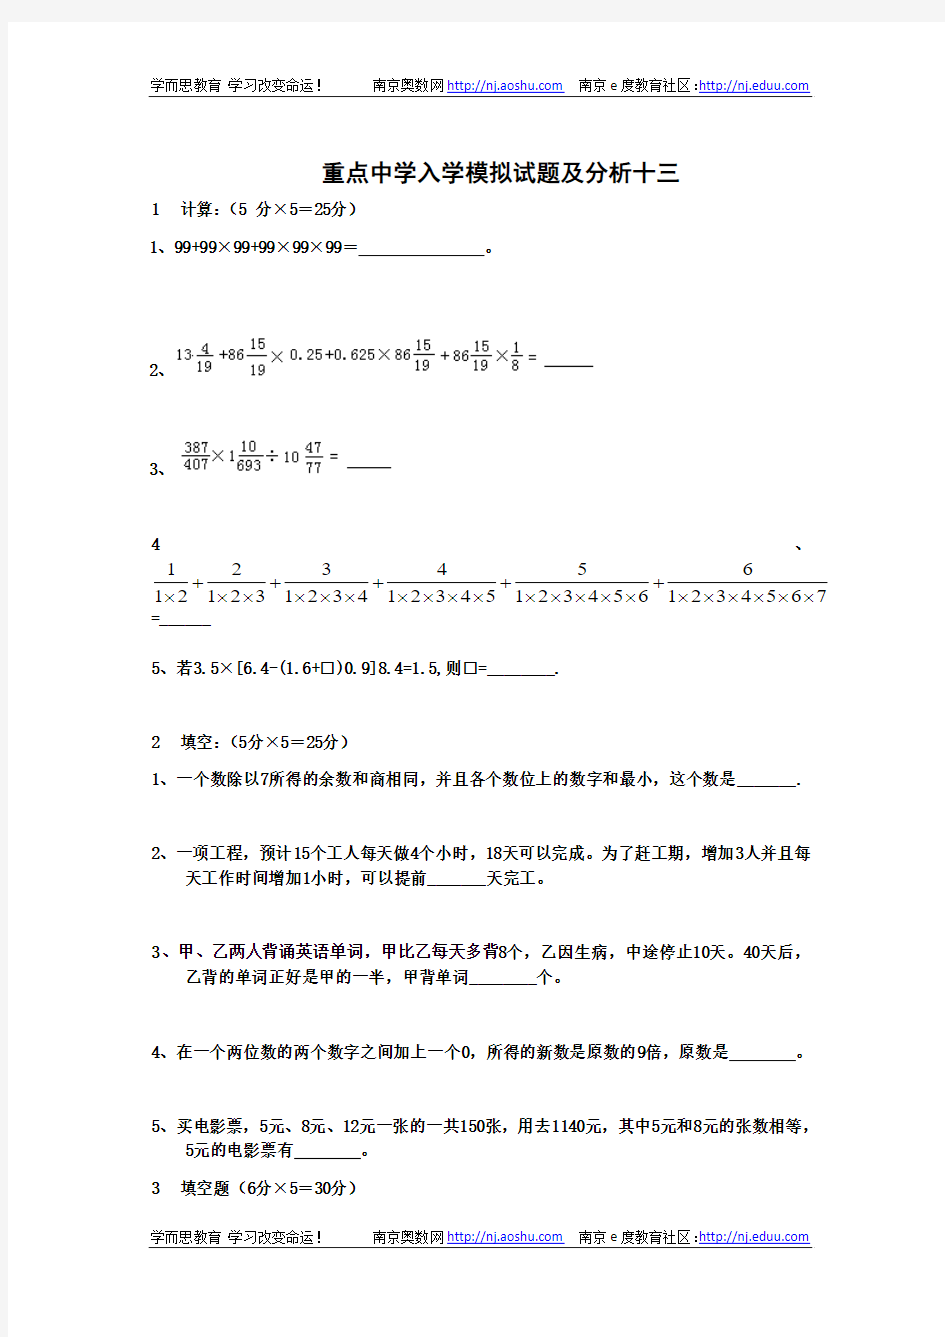 2011年小升初数学分班考试题及答案详解(十三)